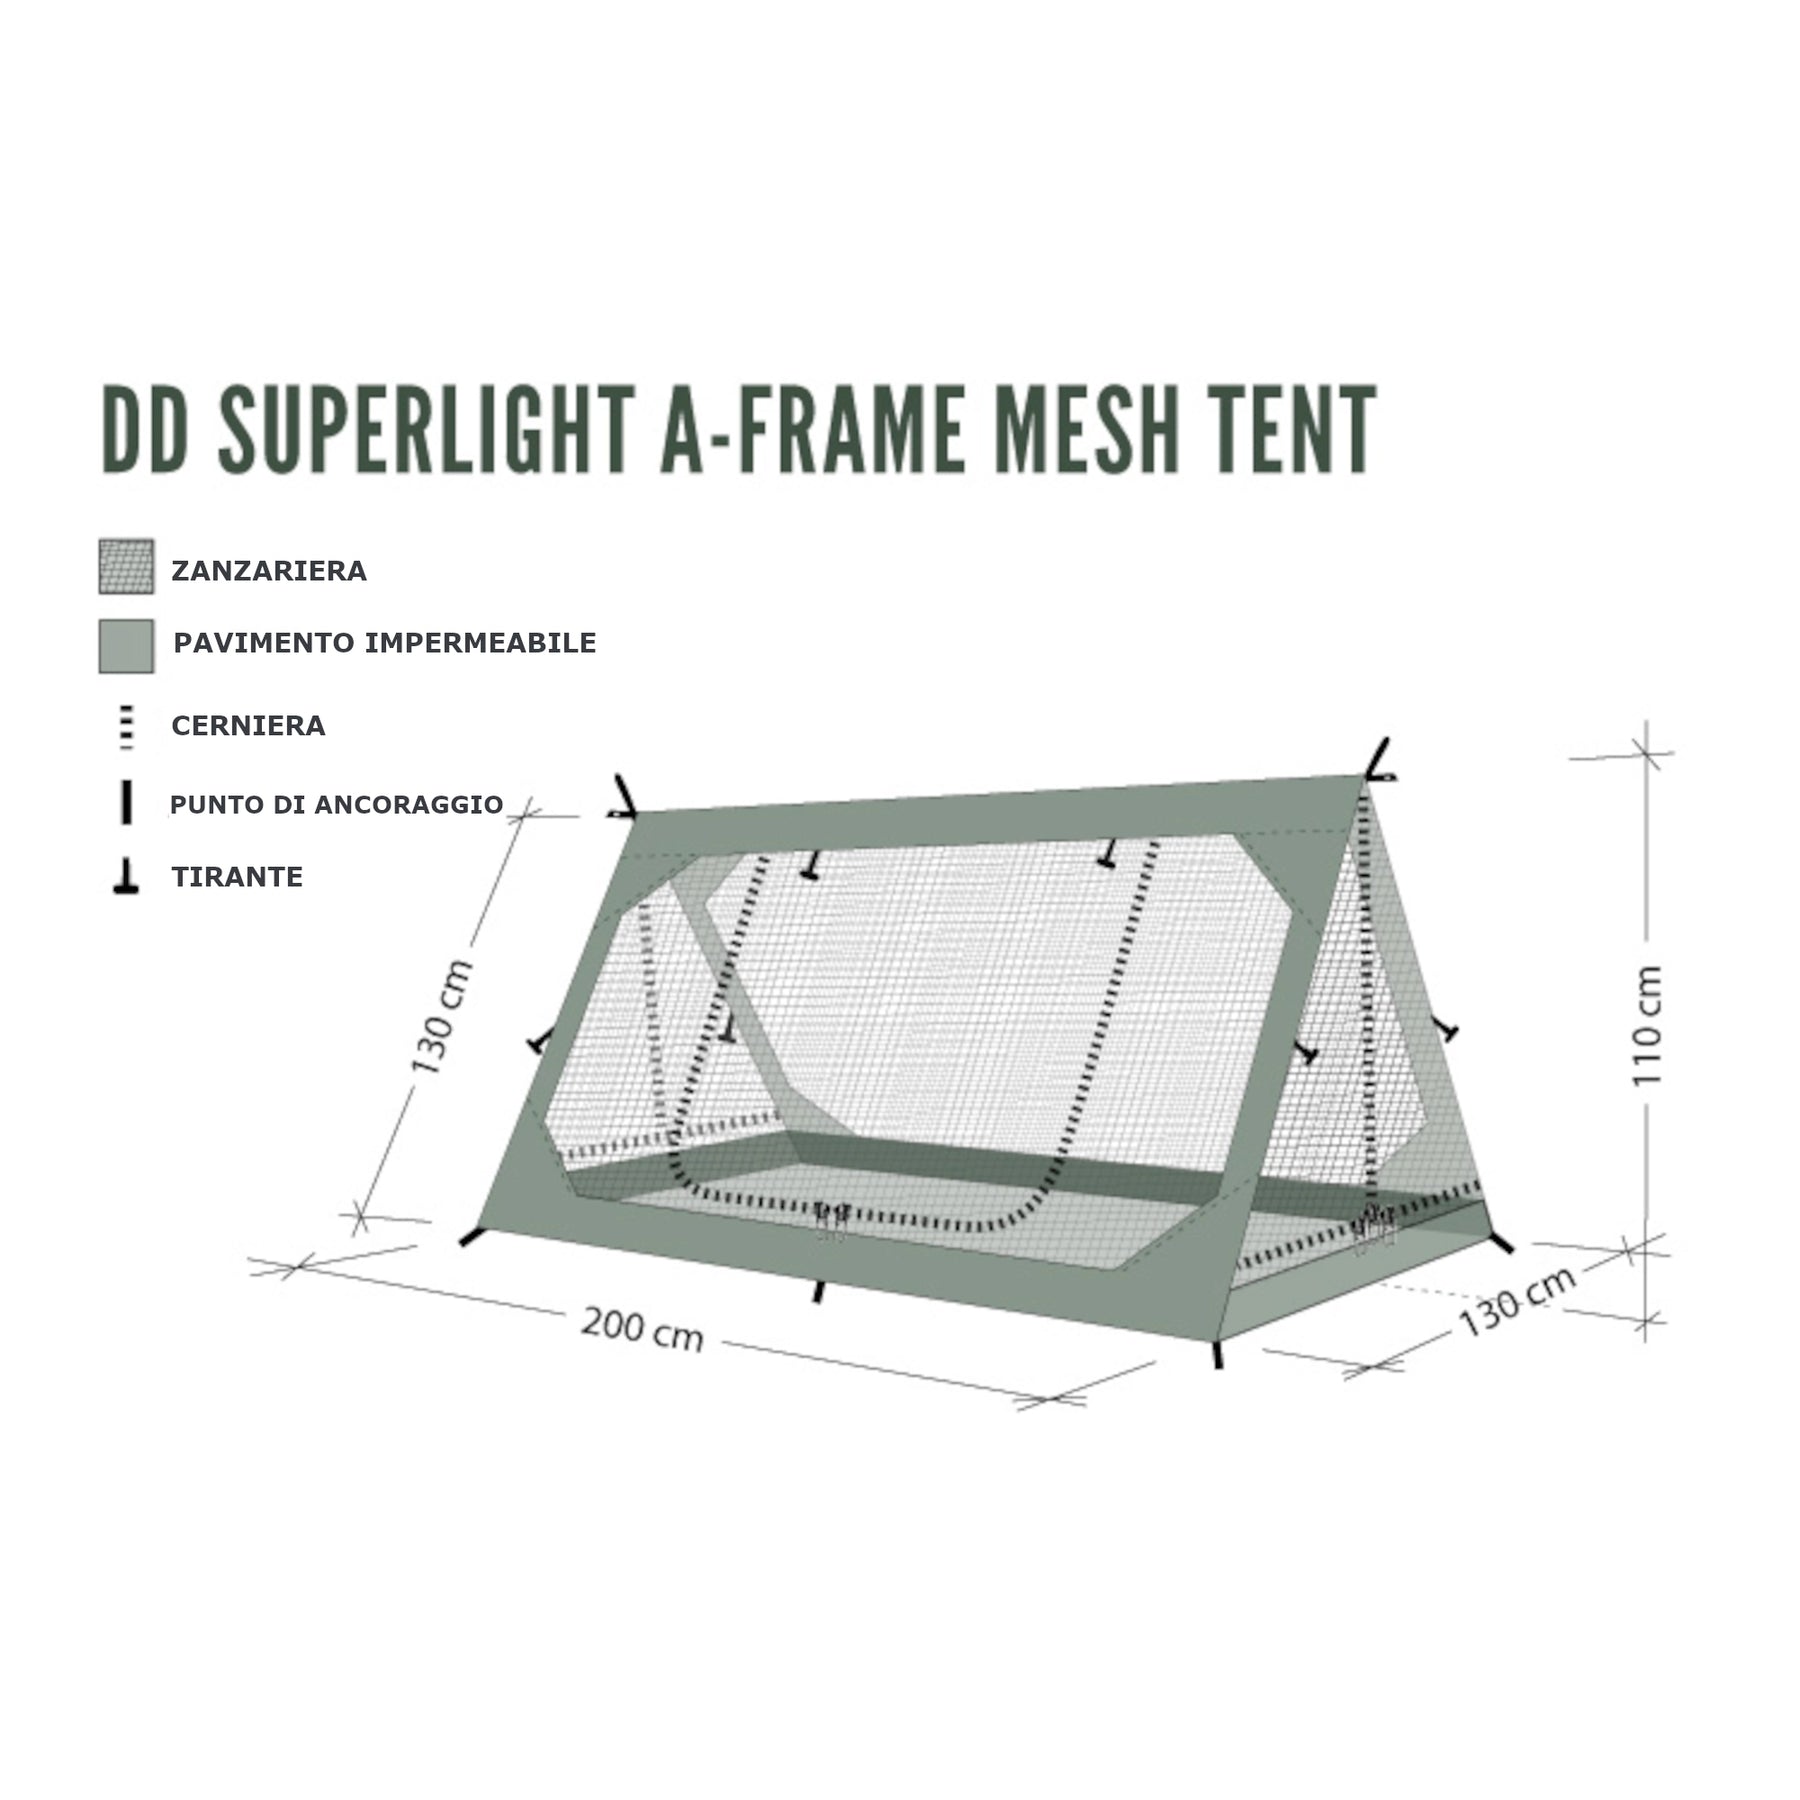 infografia sulla dd a-frame mesh